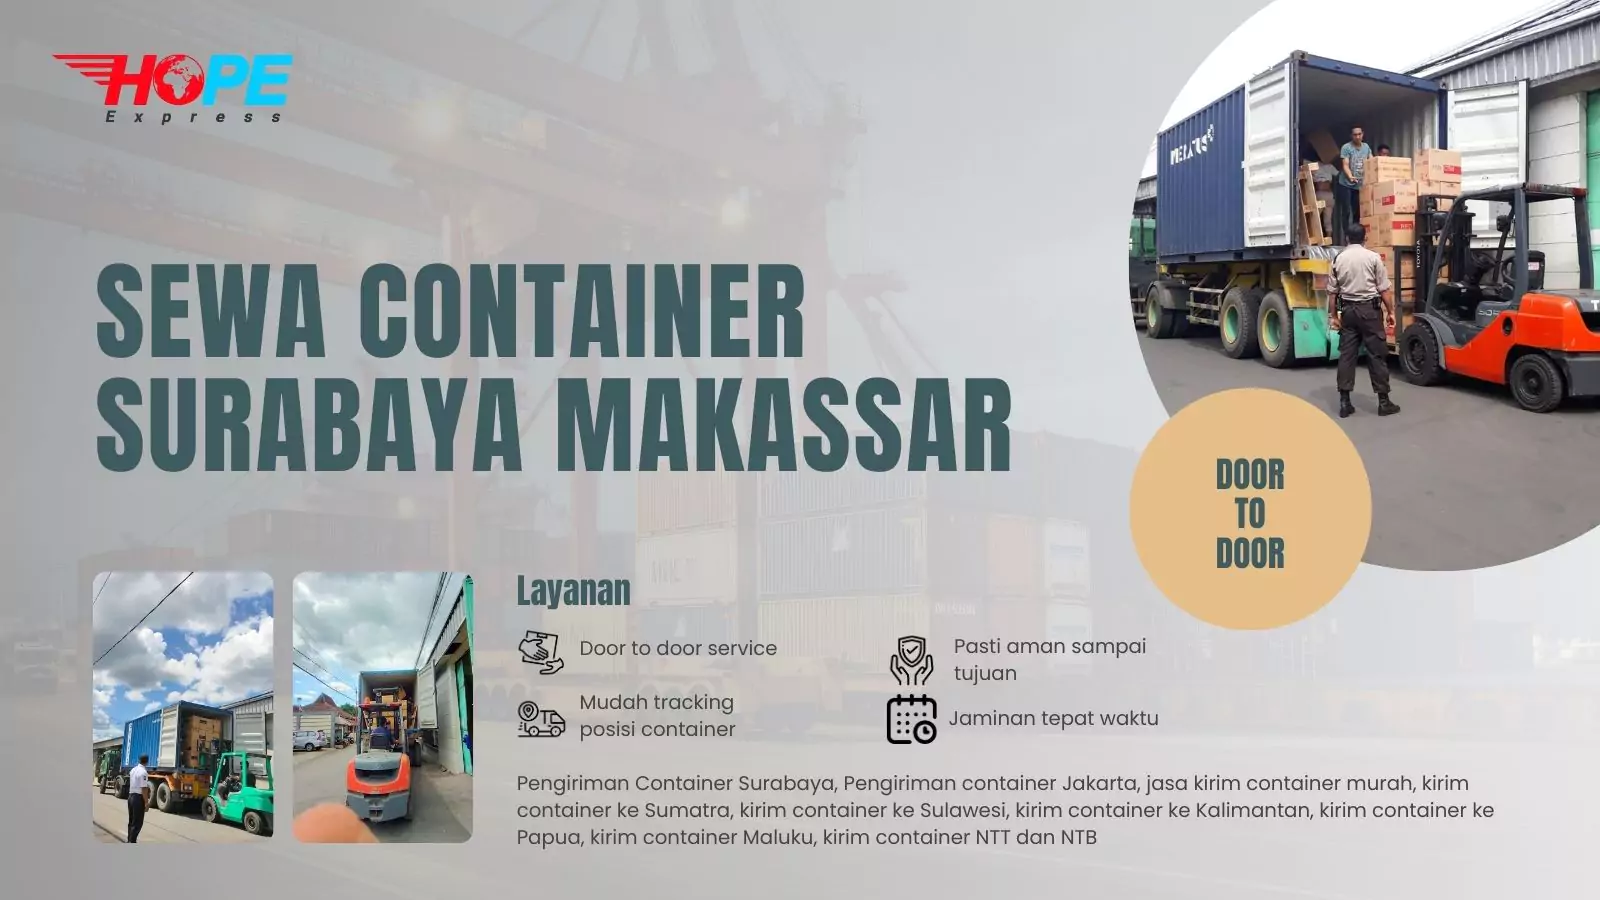 Sewa Container Surabaya Makassar